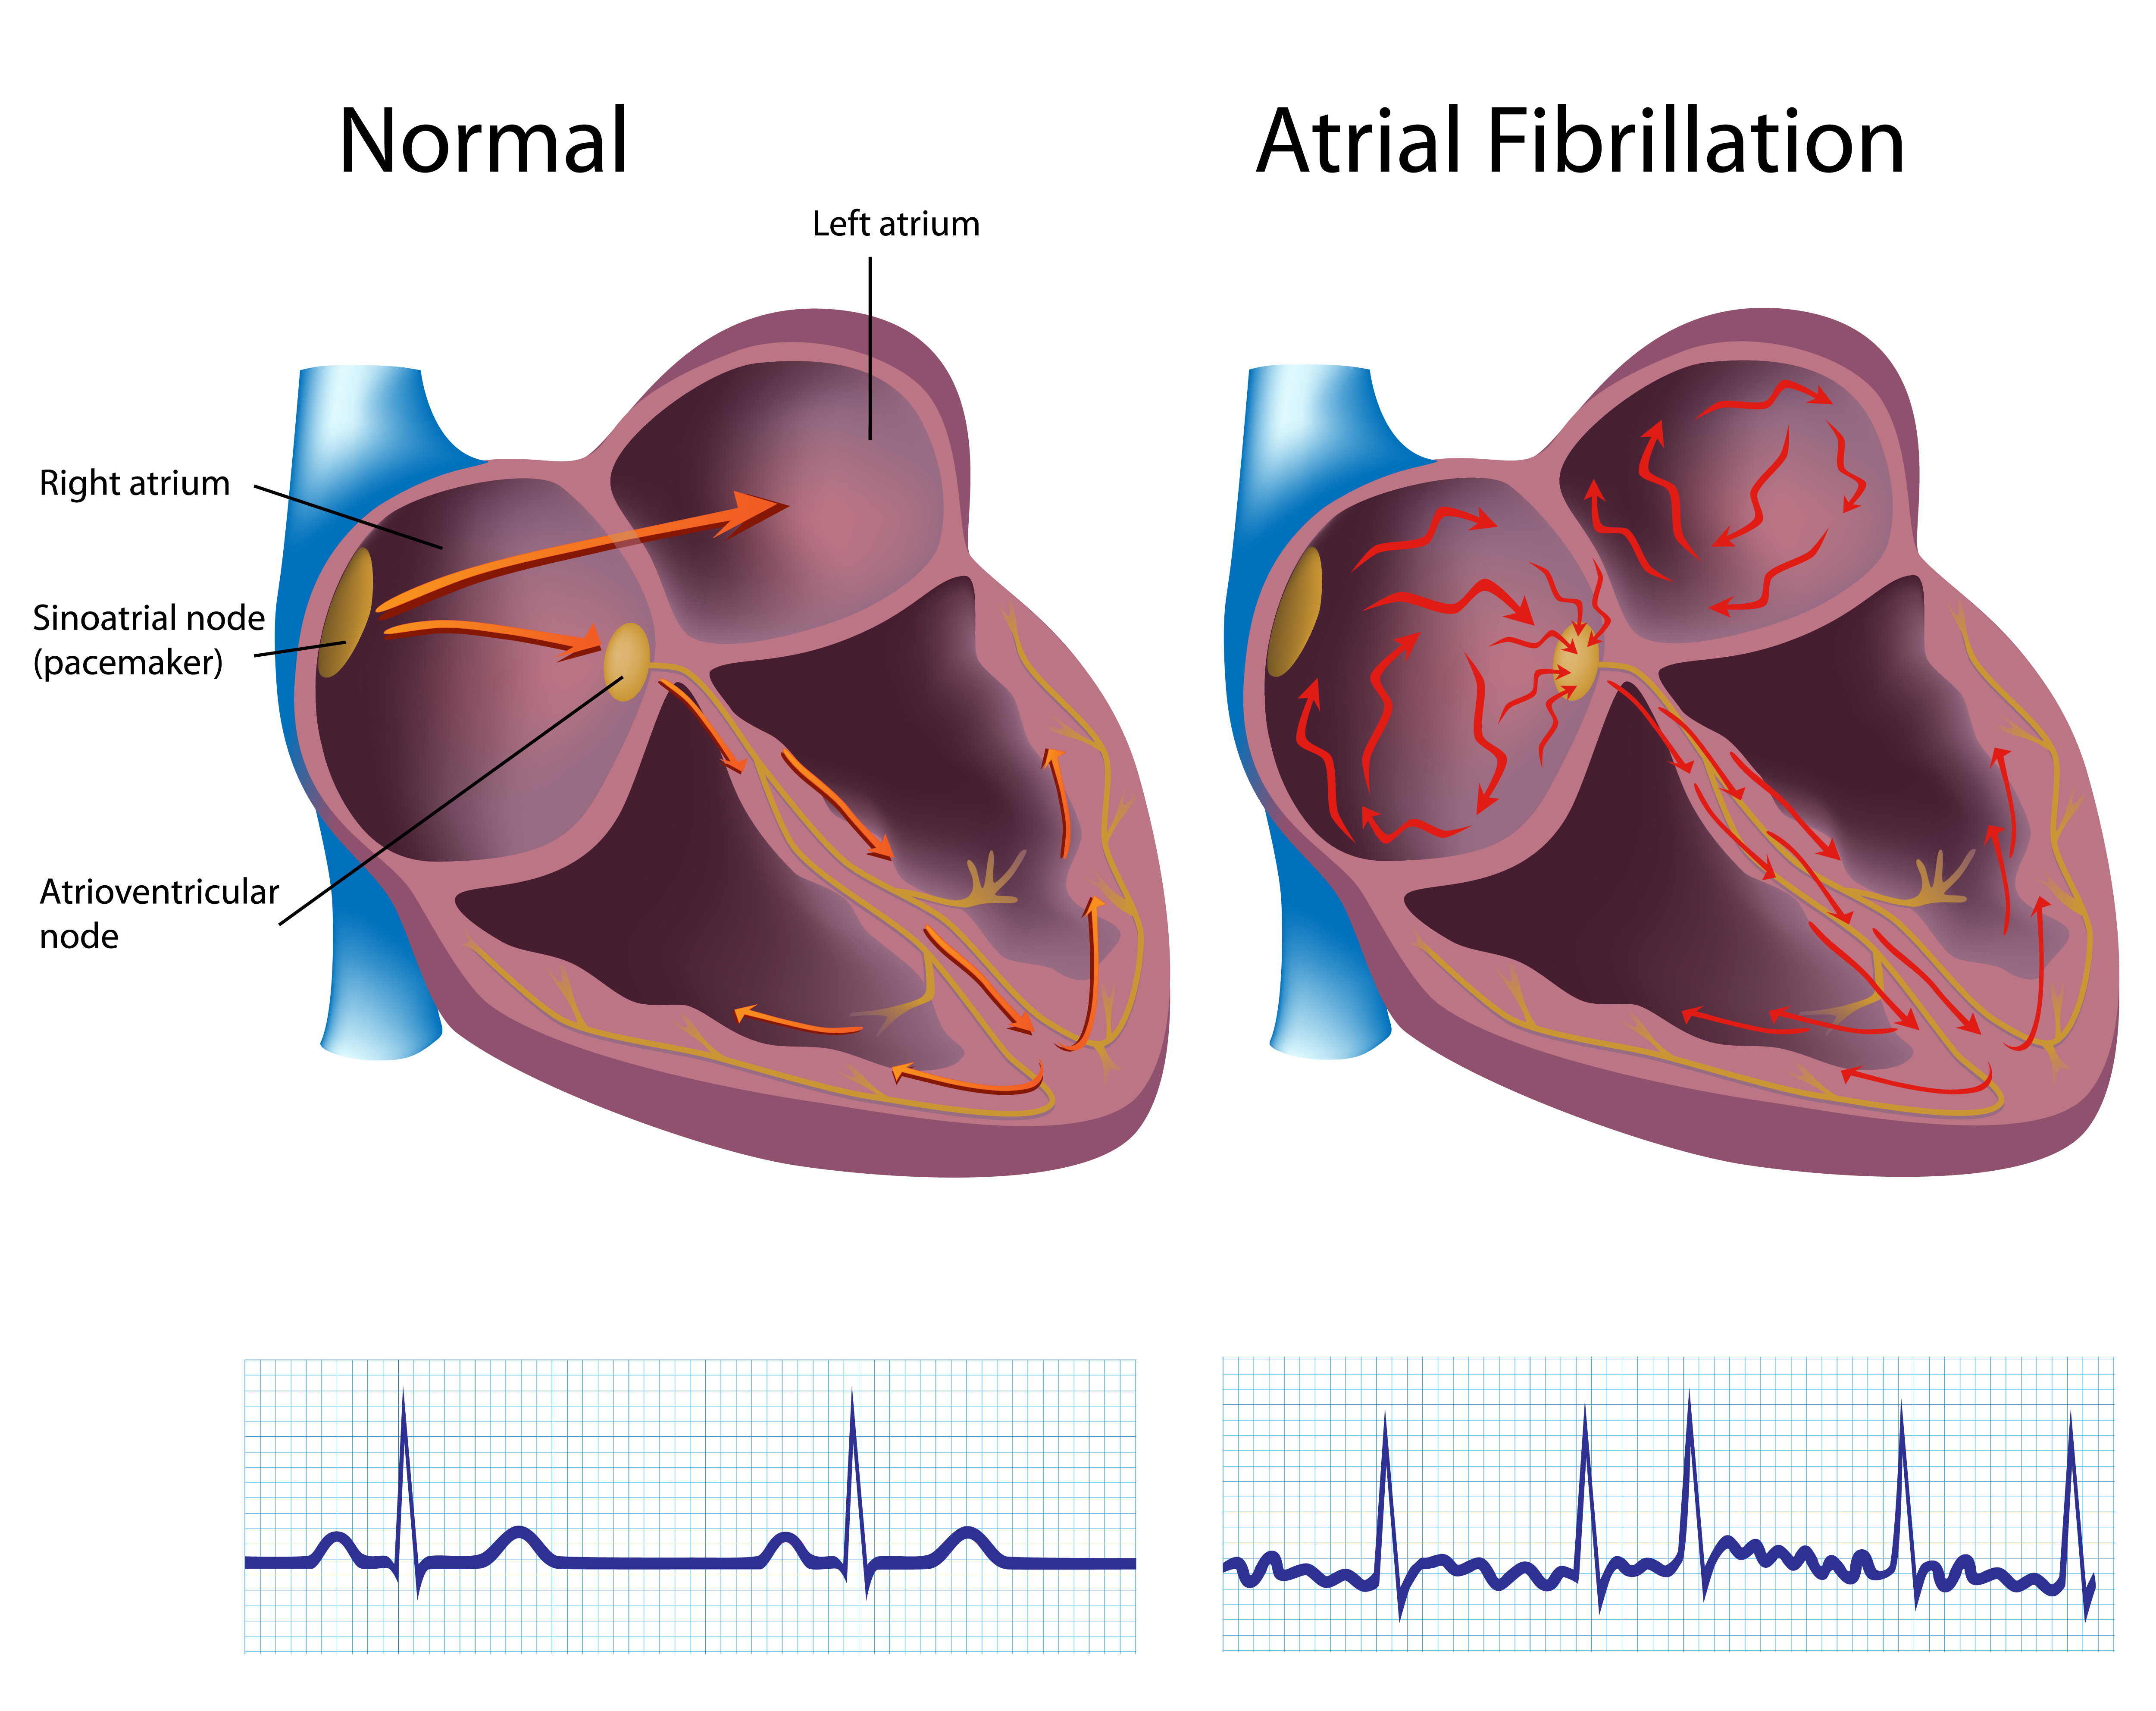 Normal heart versus a-fib heart